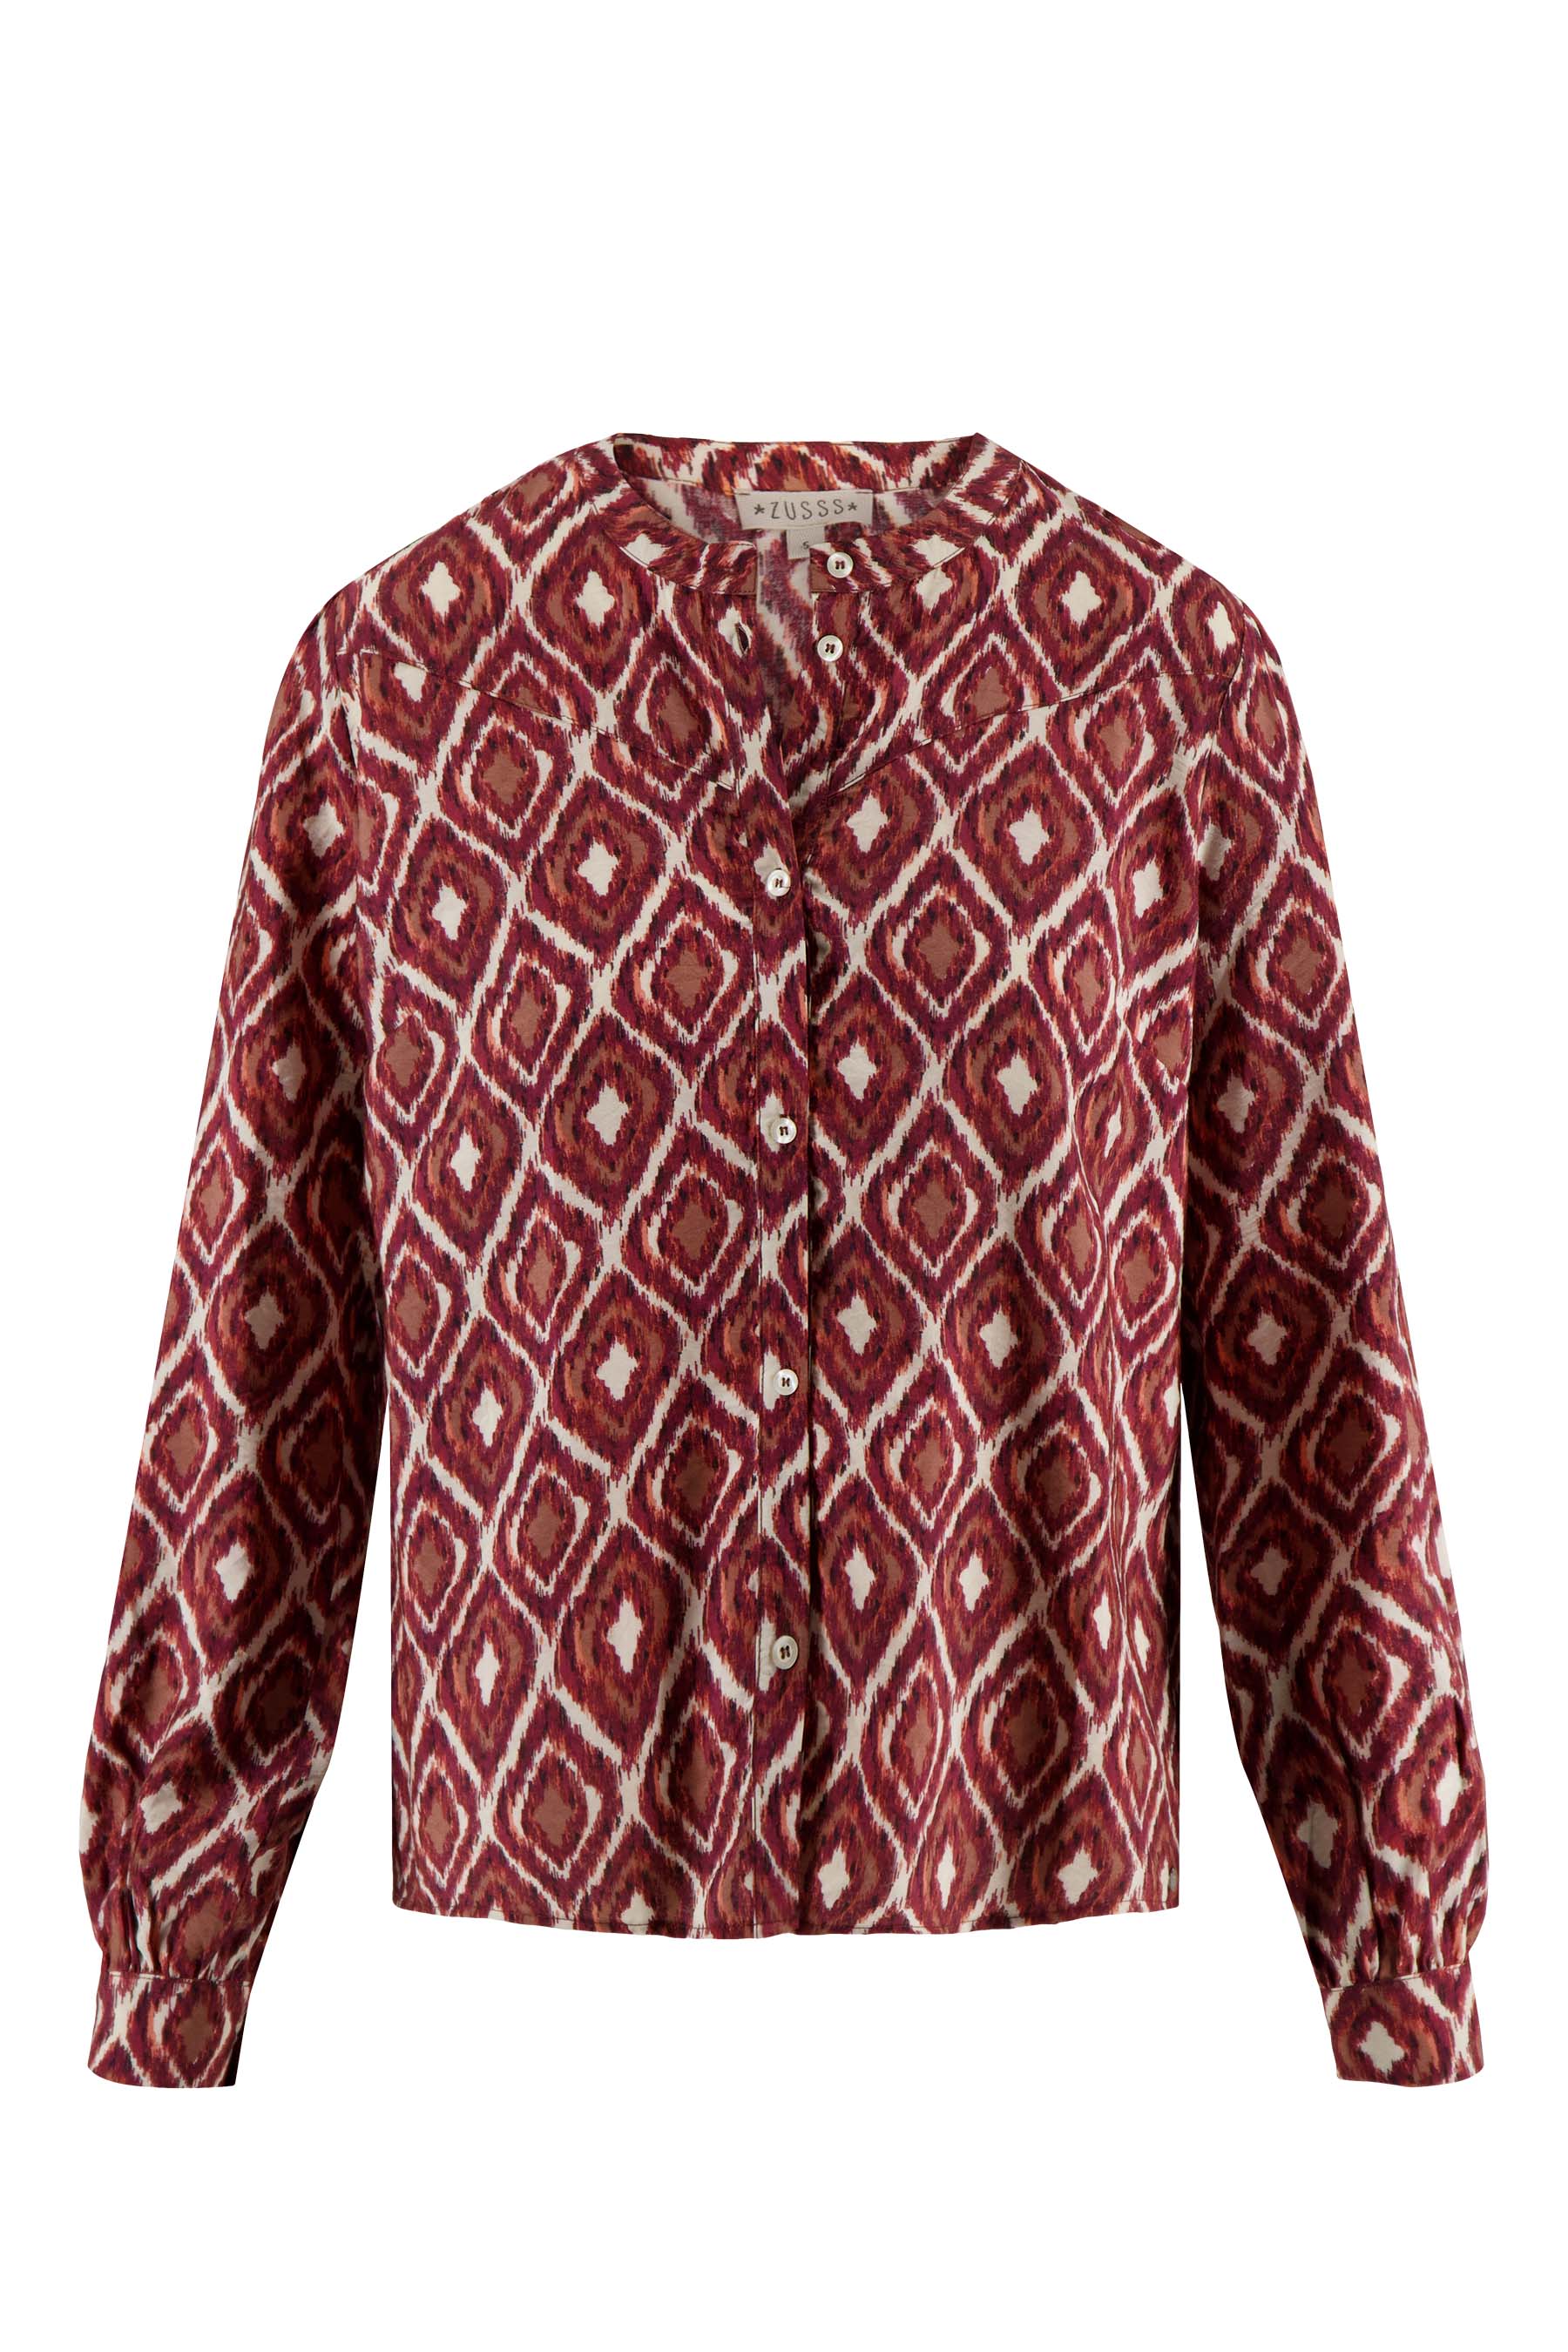 Blouse met ikat print - Zusss blouse met ikat print zand roodbruin 0304 044 7037 voor 1 - 204